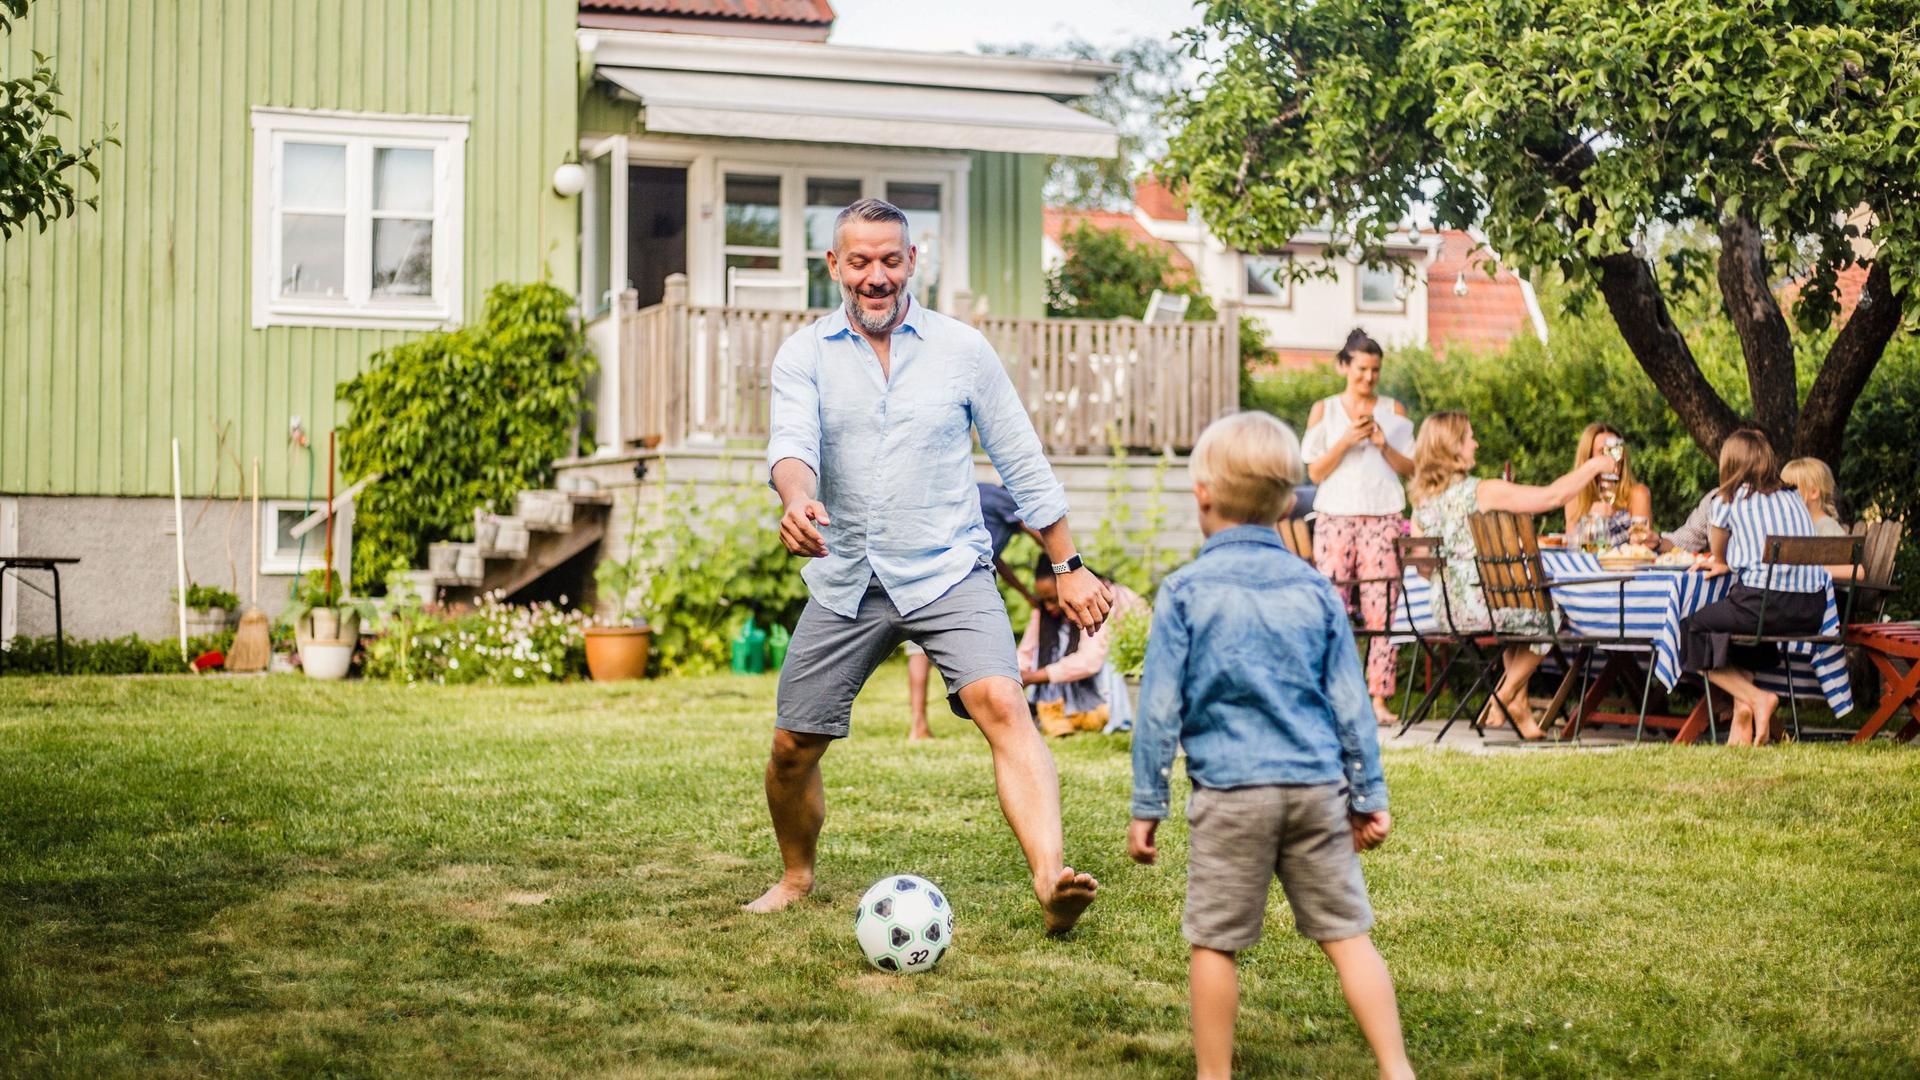 Vater spielt mit seinem Sohn im Garten eines Einfamilienhauses Fussball während im Hintergrund am Tisch gegessen wird.